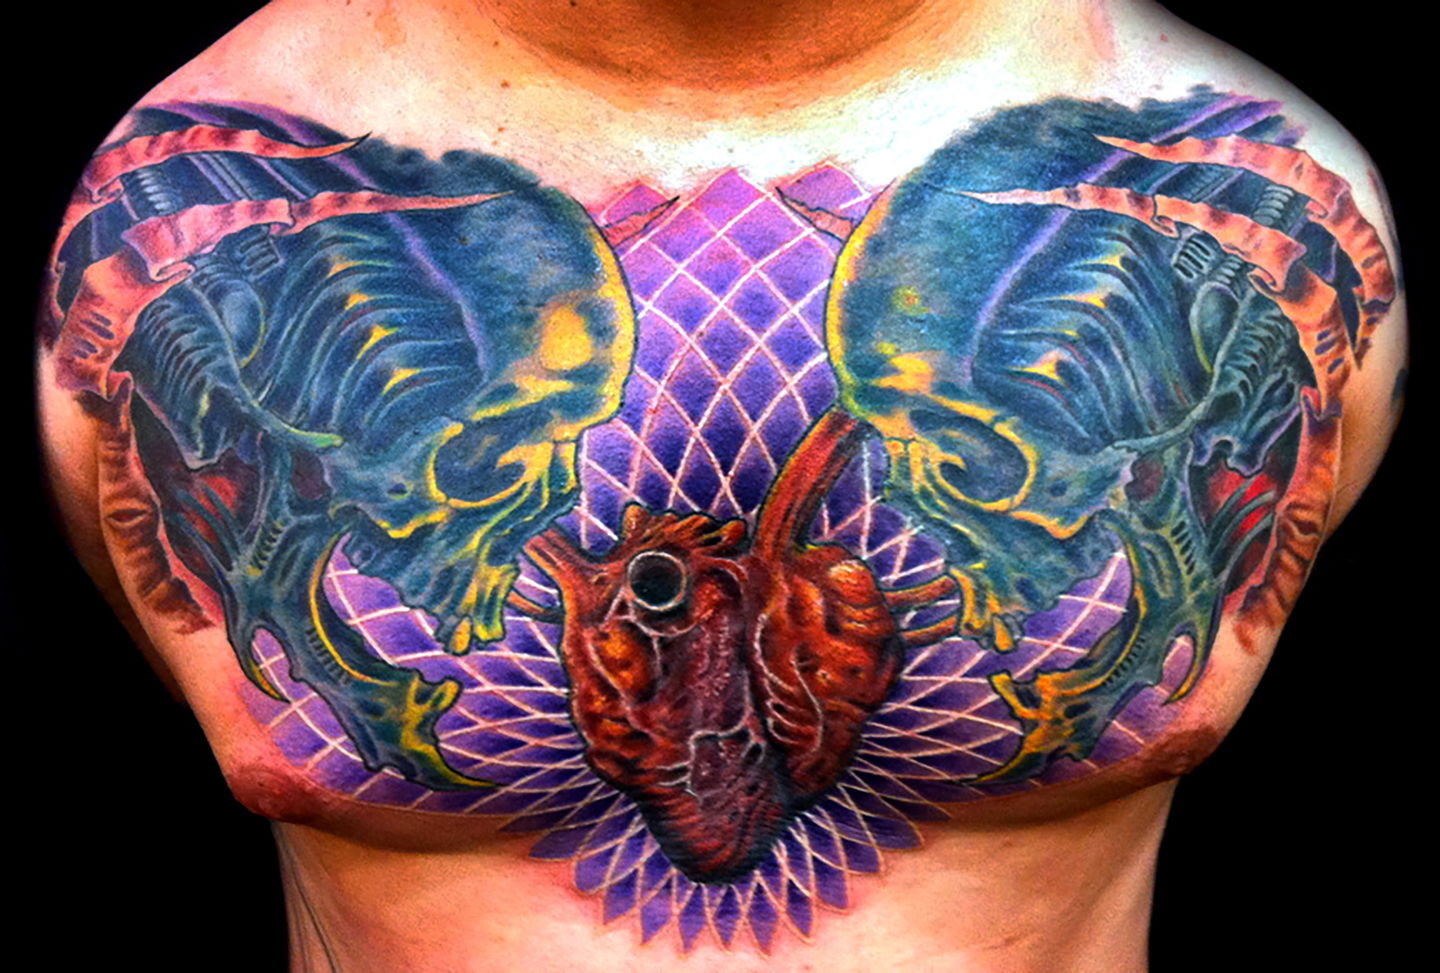 Las-vegas-tattoo-artist_joe-riley_biomech-skulls-chest-tattoo